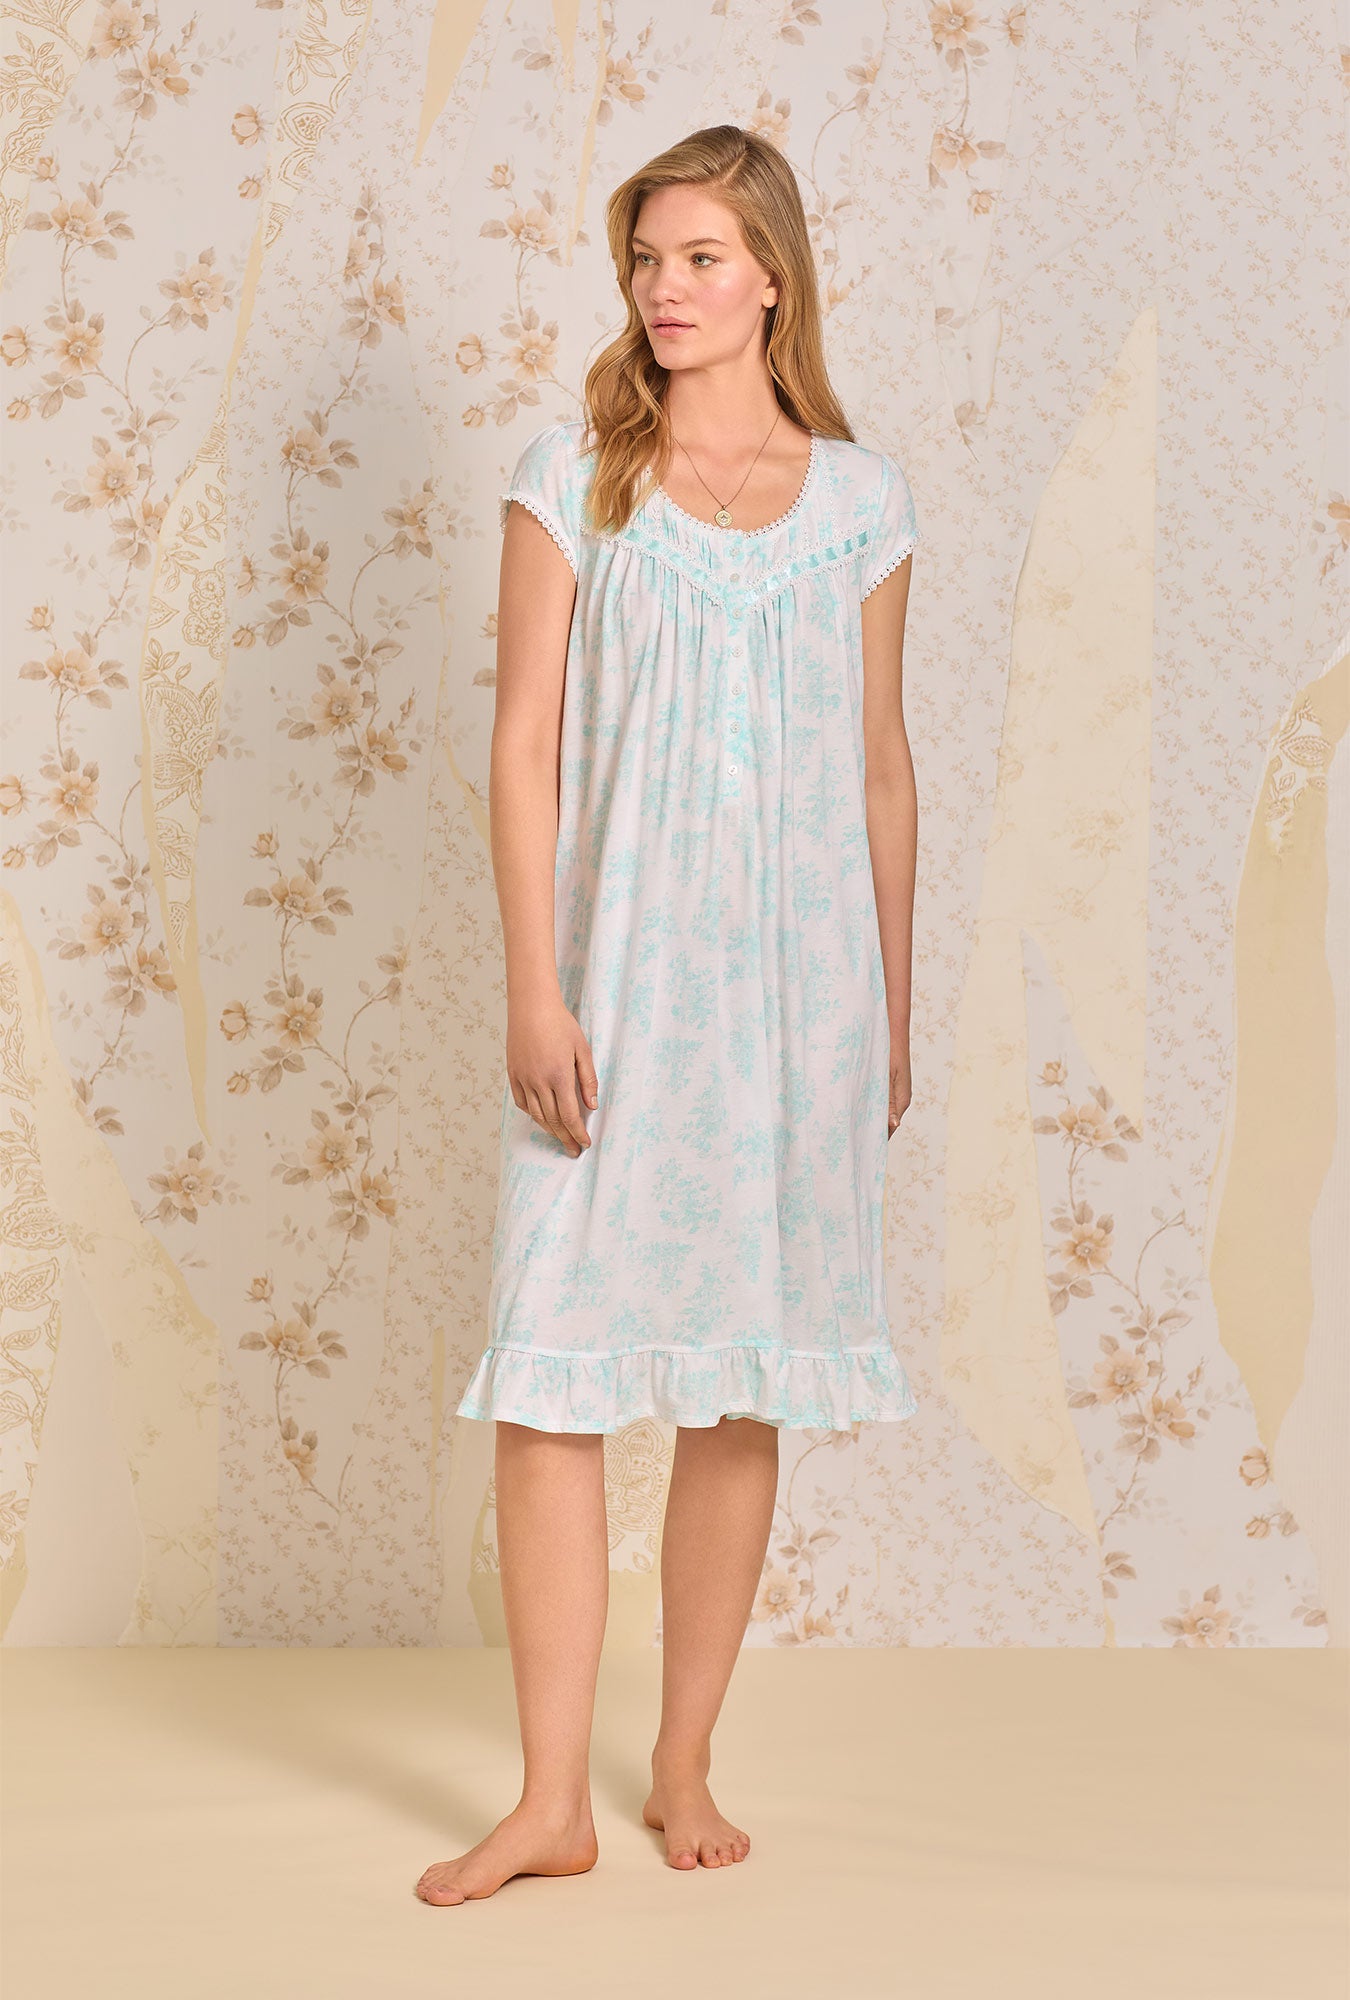 A lady wearing Aqua Dream Floral Waltz Knit Nightgown